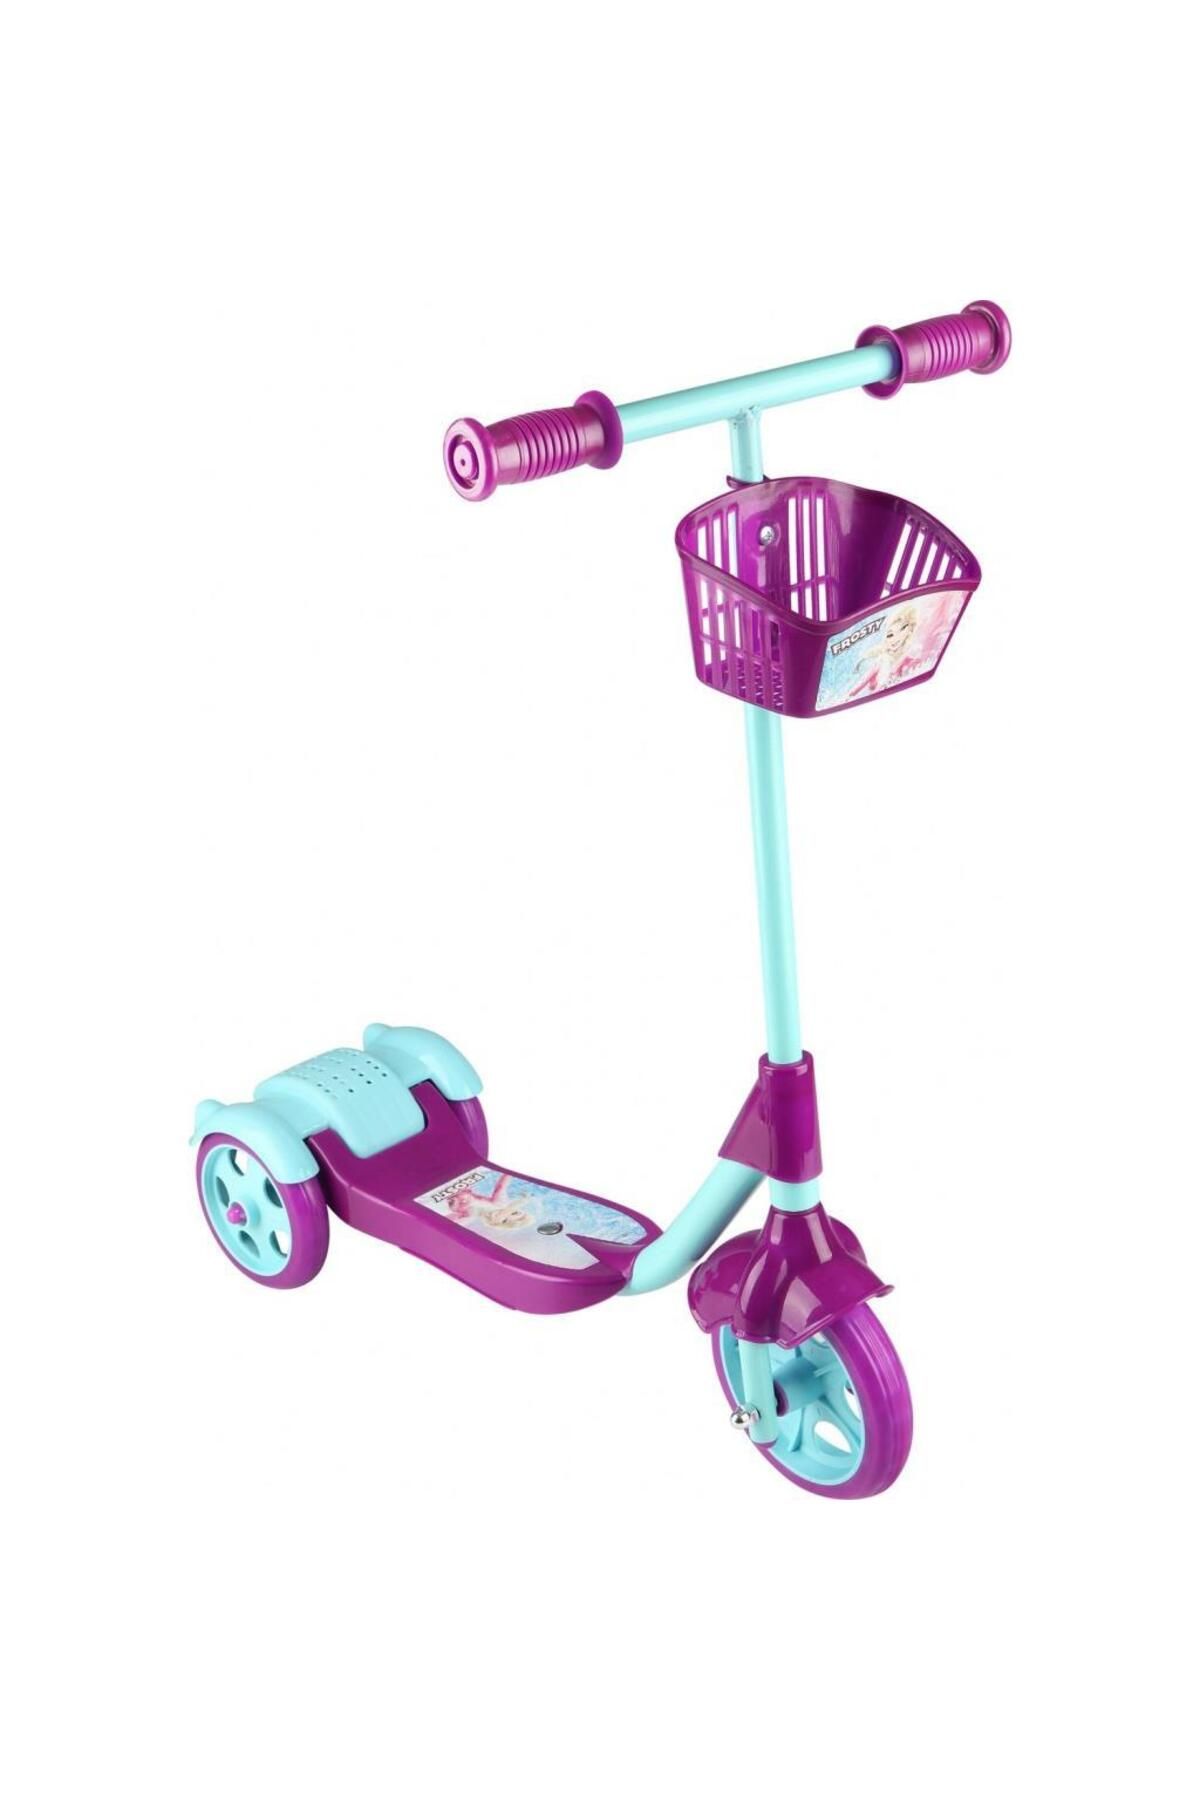 Erdem Oyuncak 3 Tekerlekli Frenli Sepetli Çocuk Scooter